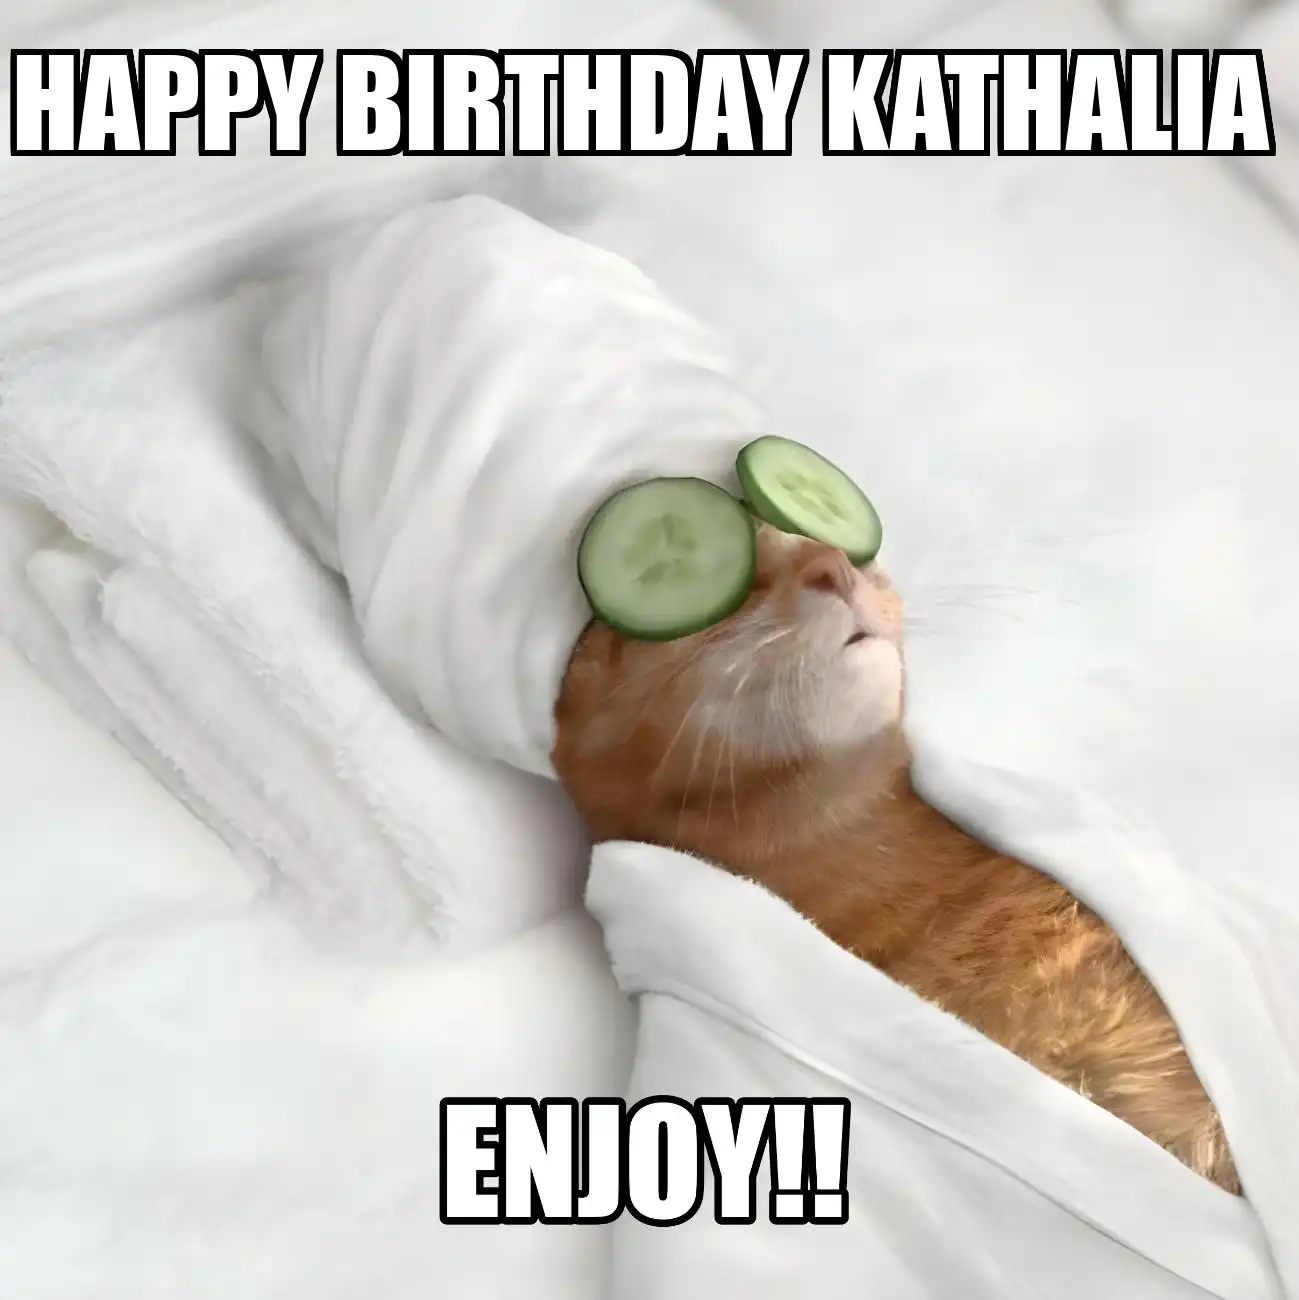 Happy Birthday Kathalia Enjoy Cat Meme